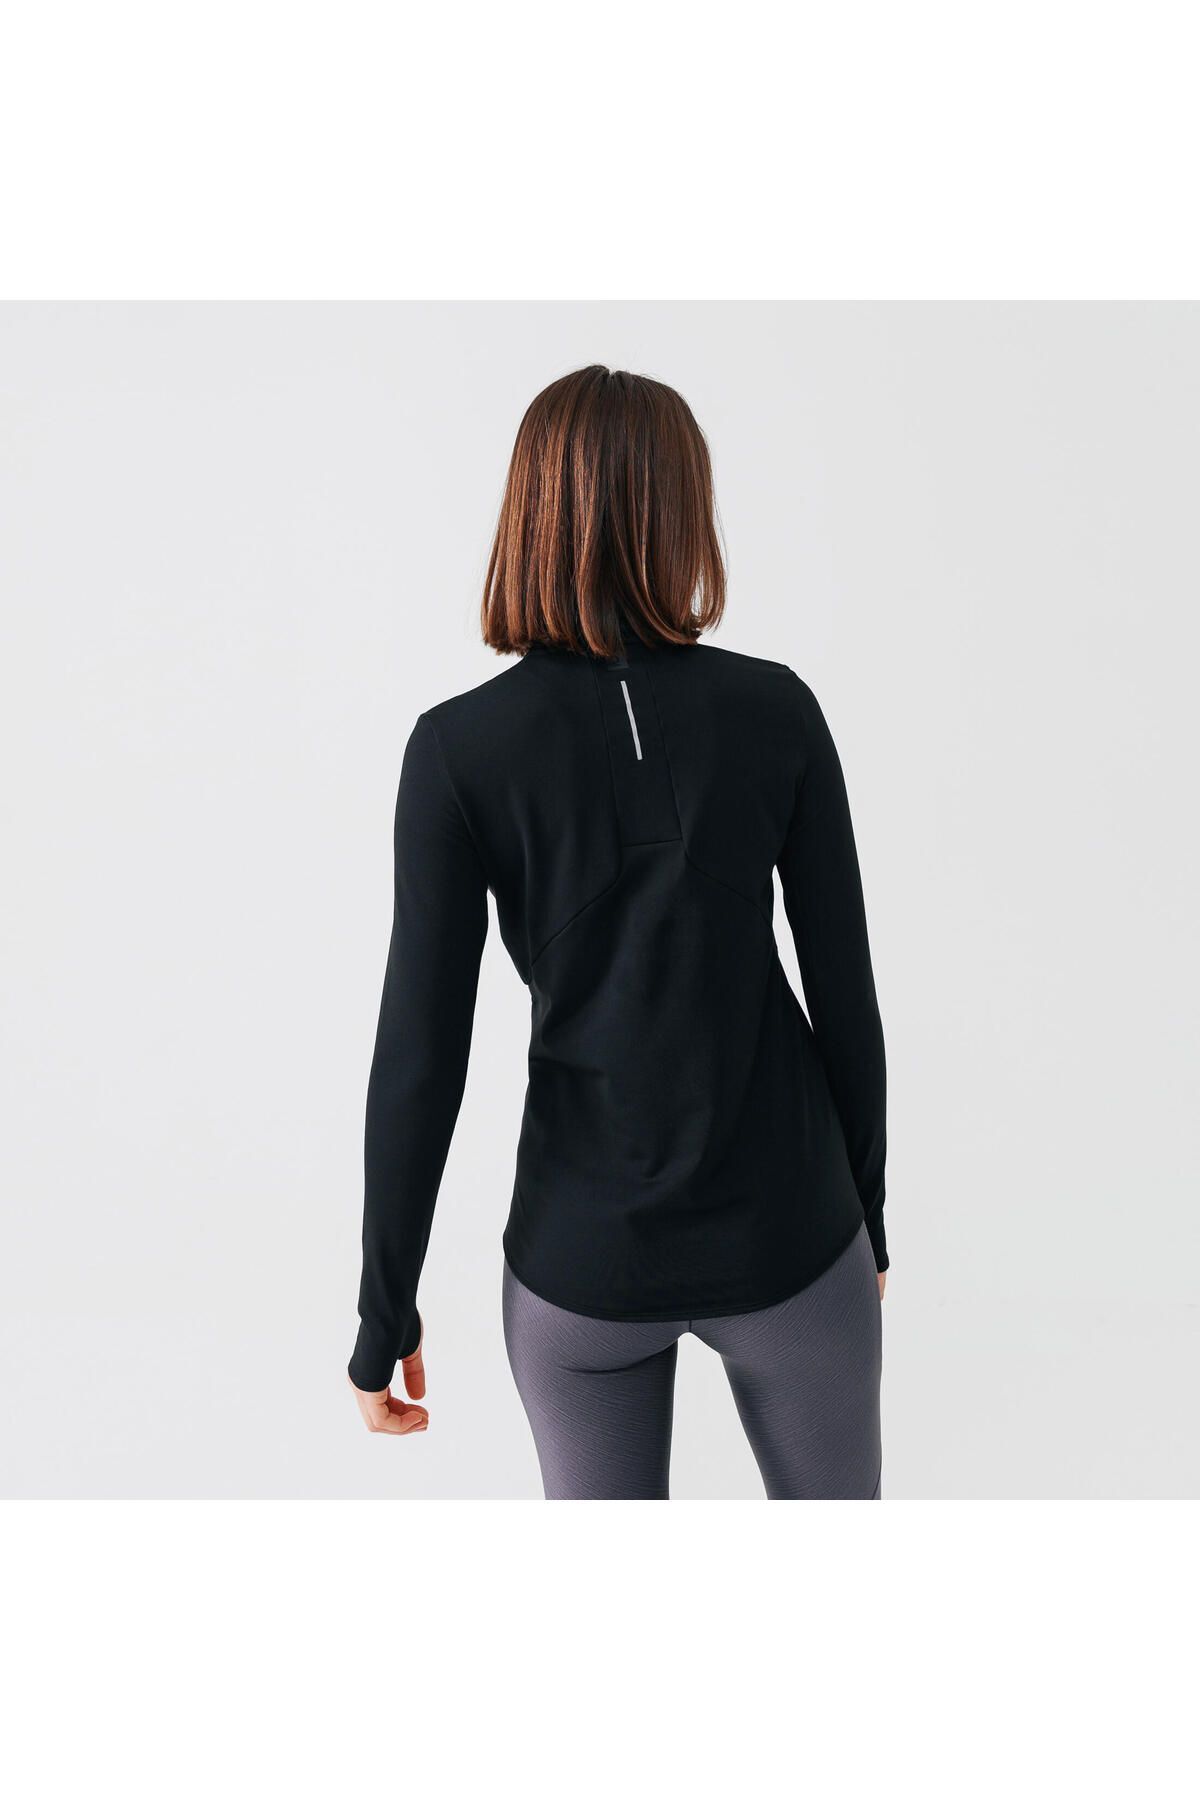 Decathlon Kadın Uzun Kollu Koşu Tişörtü - Siyah - Warm